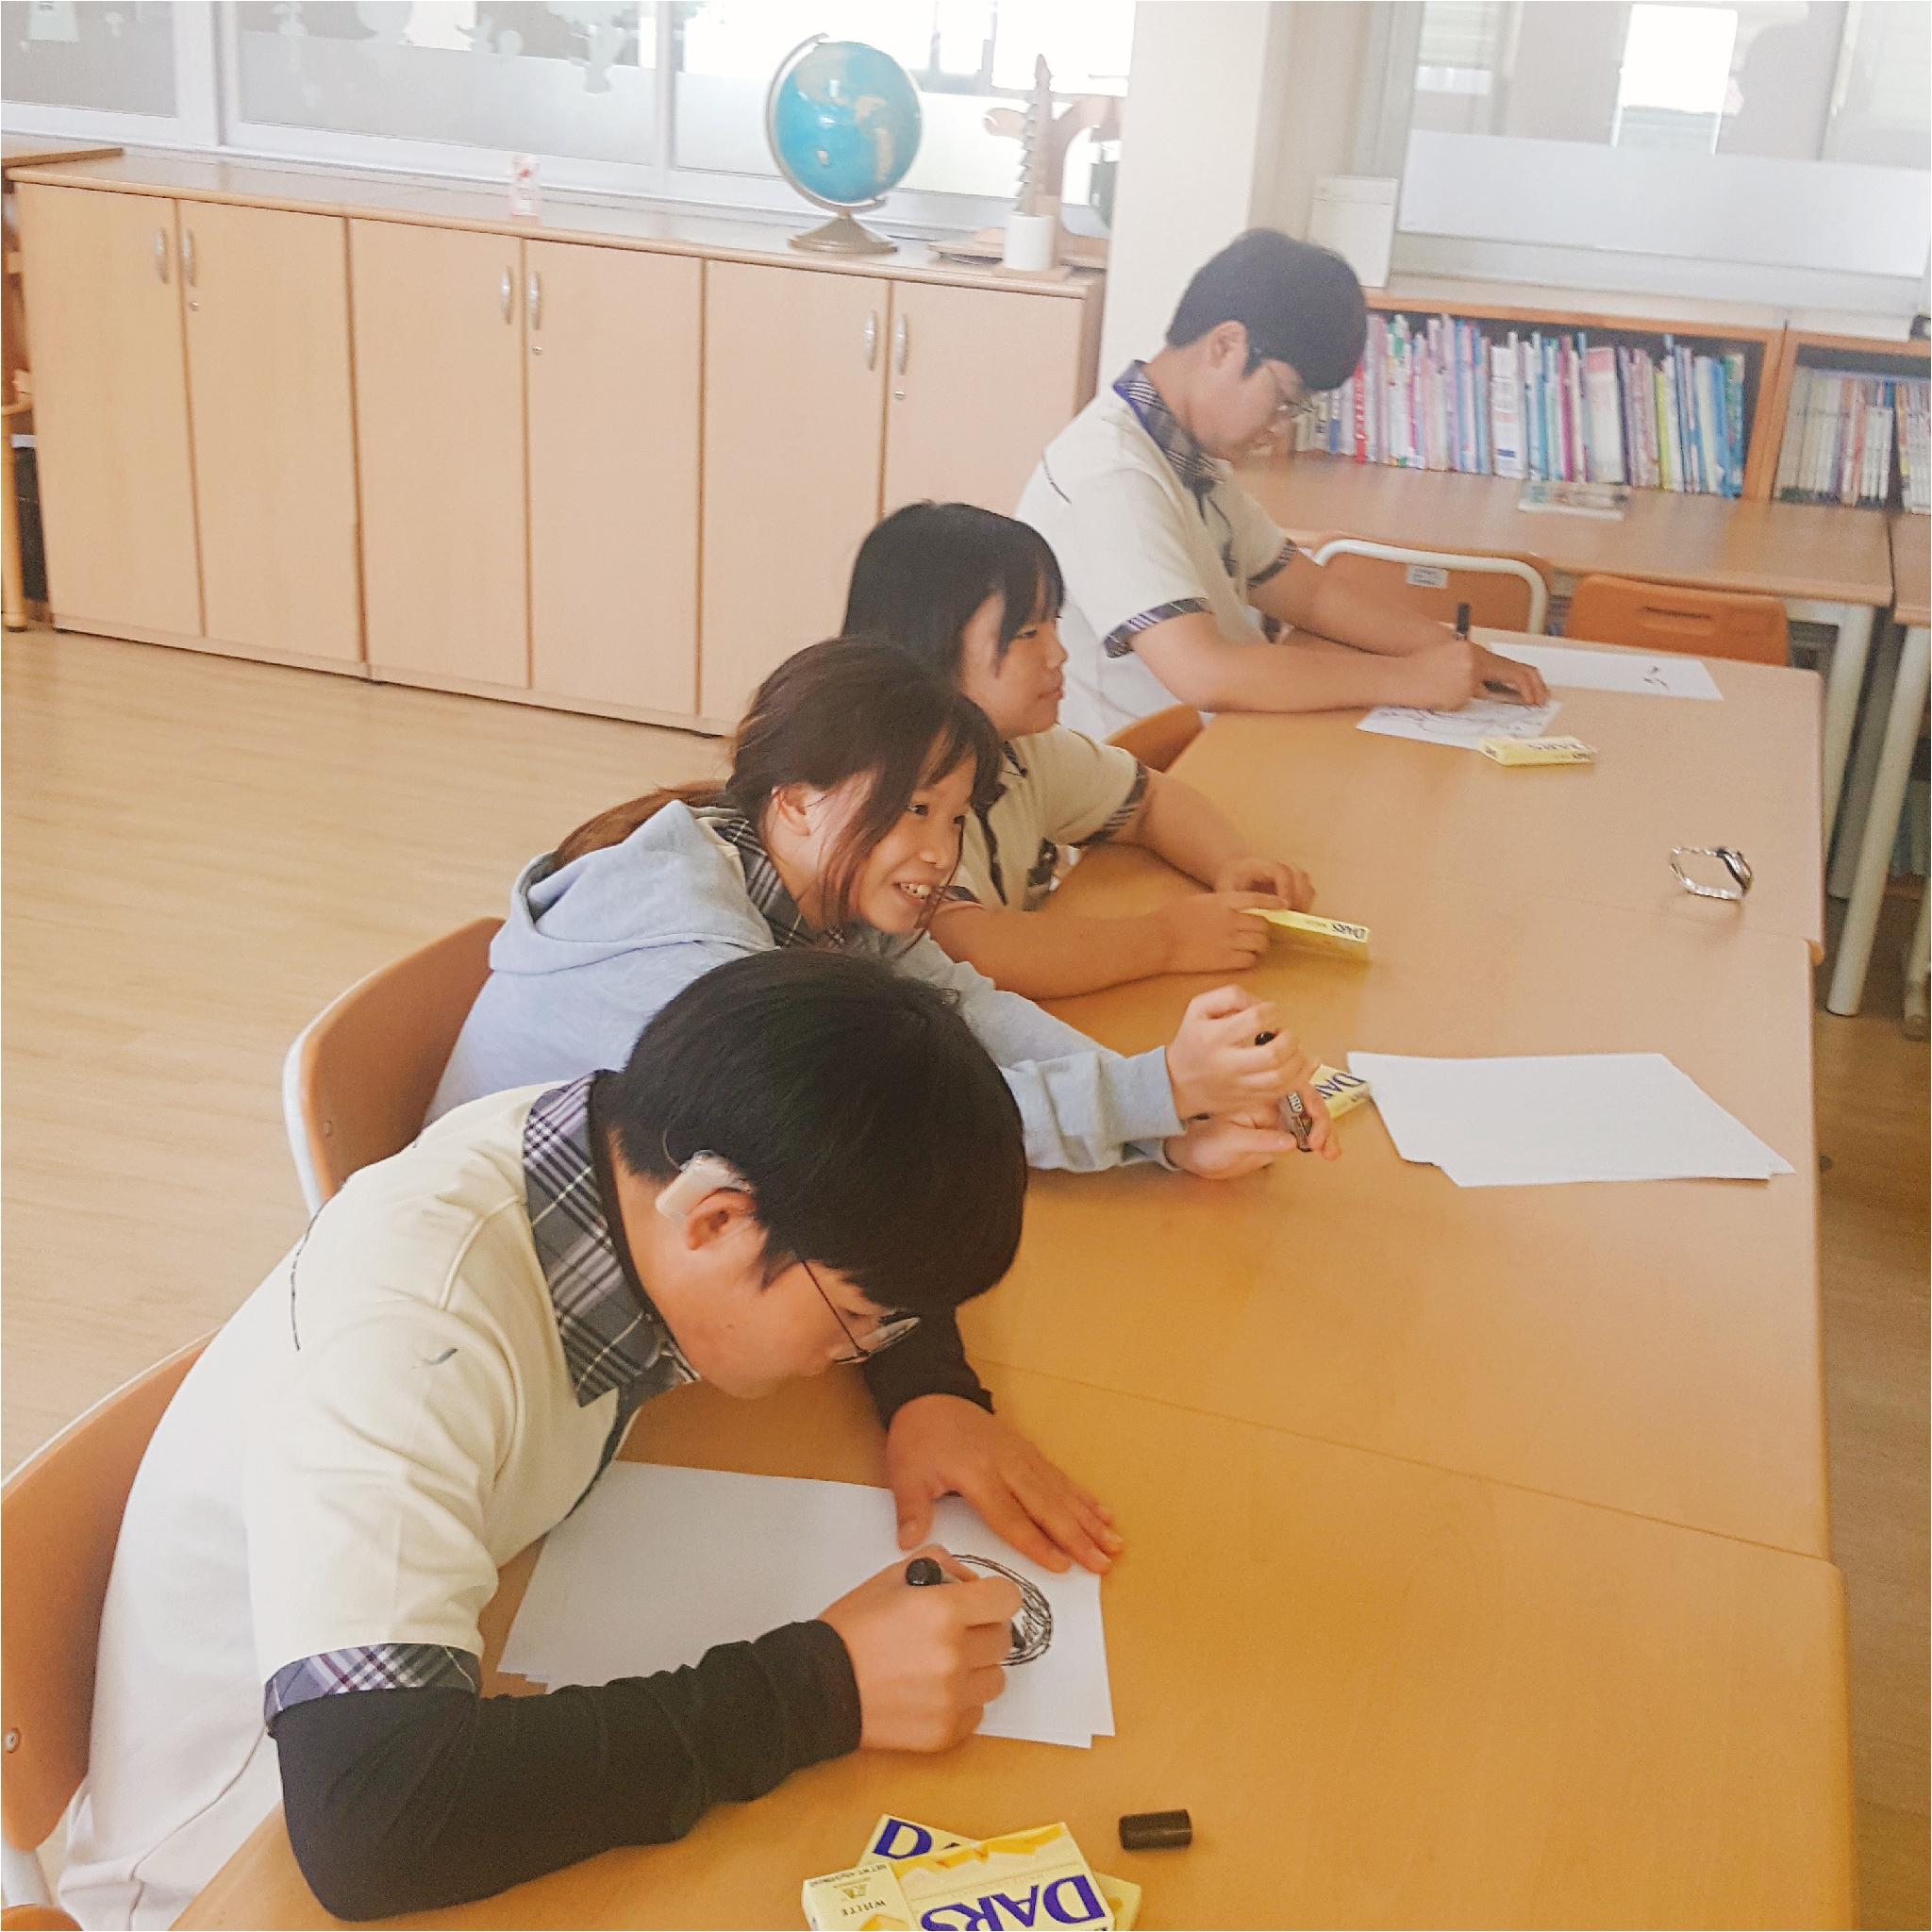 학생들이 긴 책상에 나란히 앉아 수업을 듣고 있는 사진